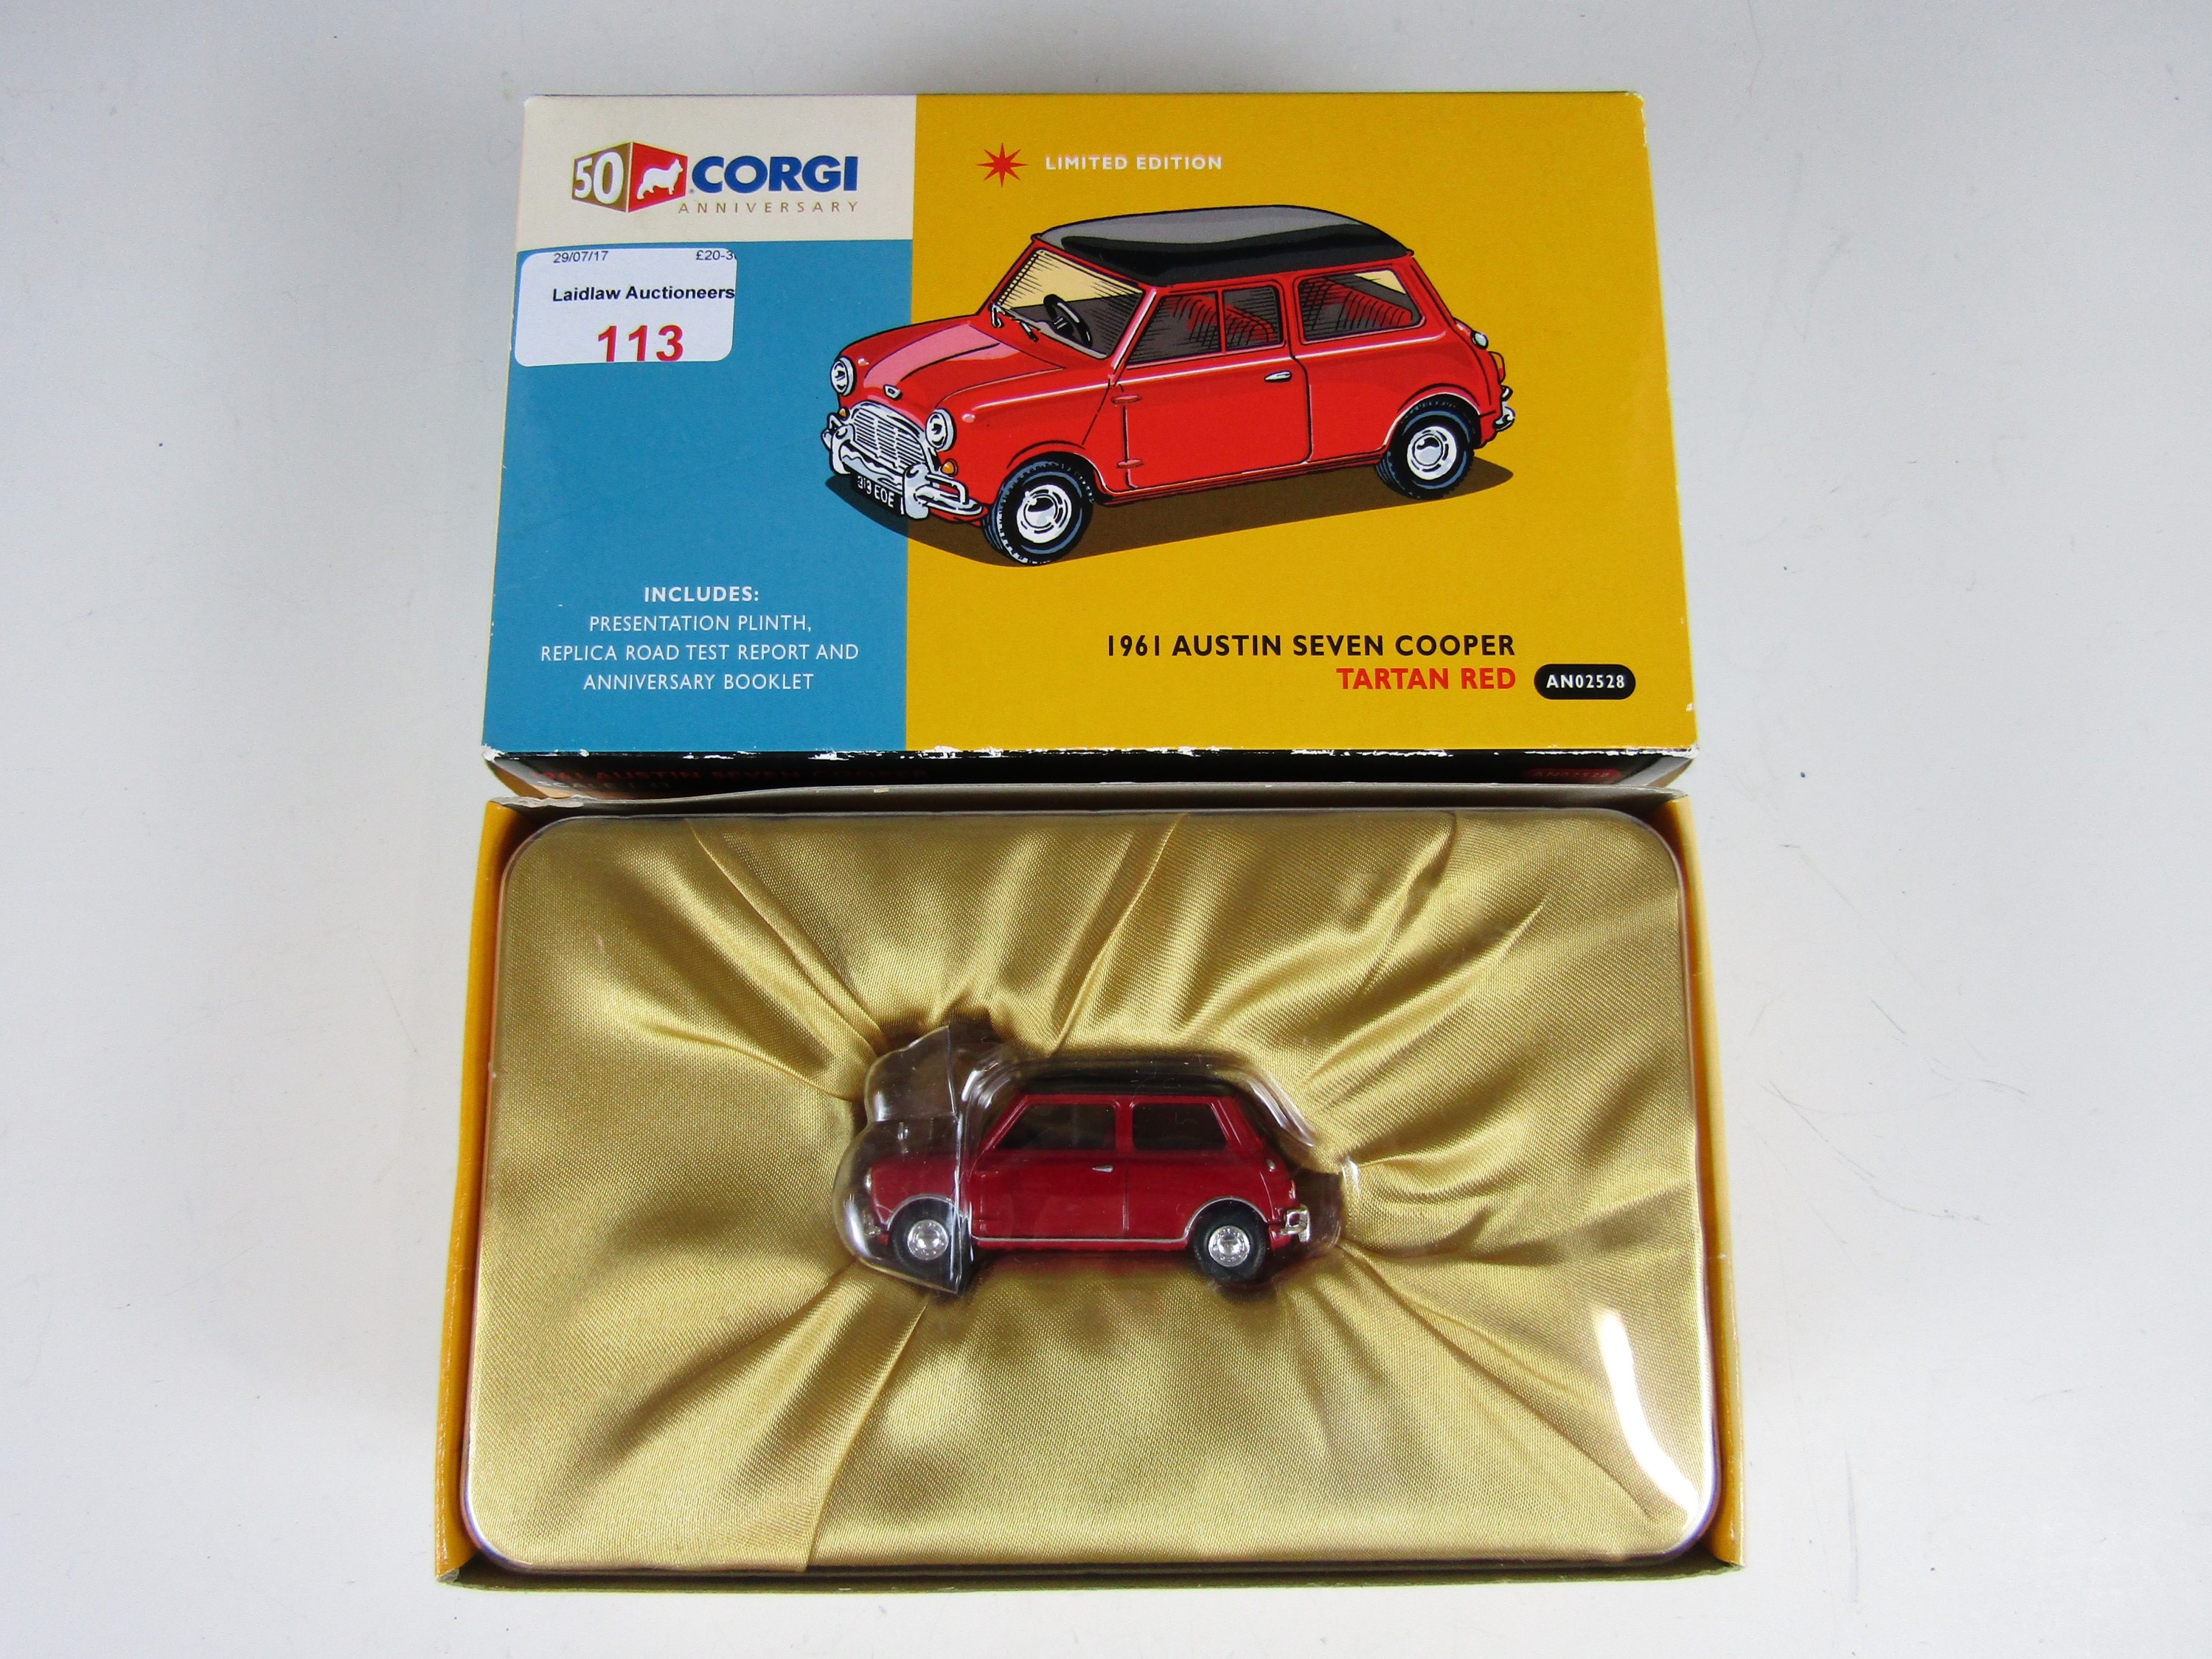 A Corgi 50th anniversary 1961 Austin Seven Cooper in tartan red, AN02528